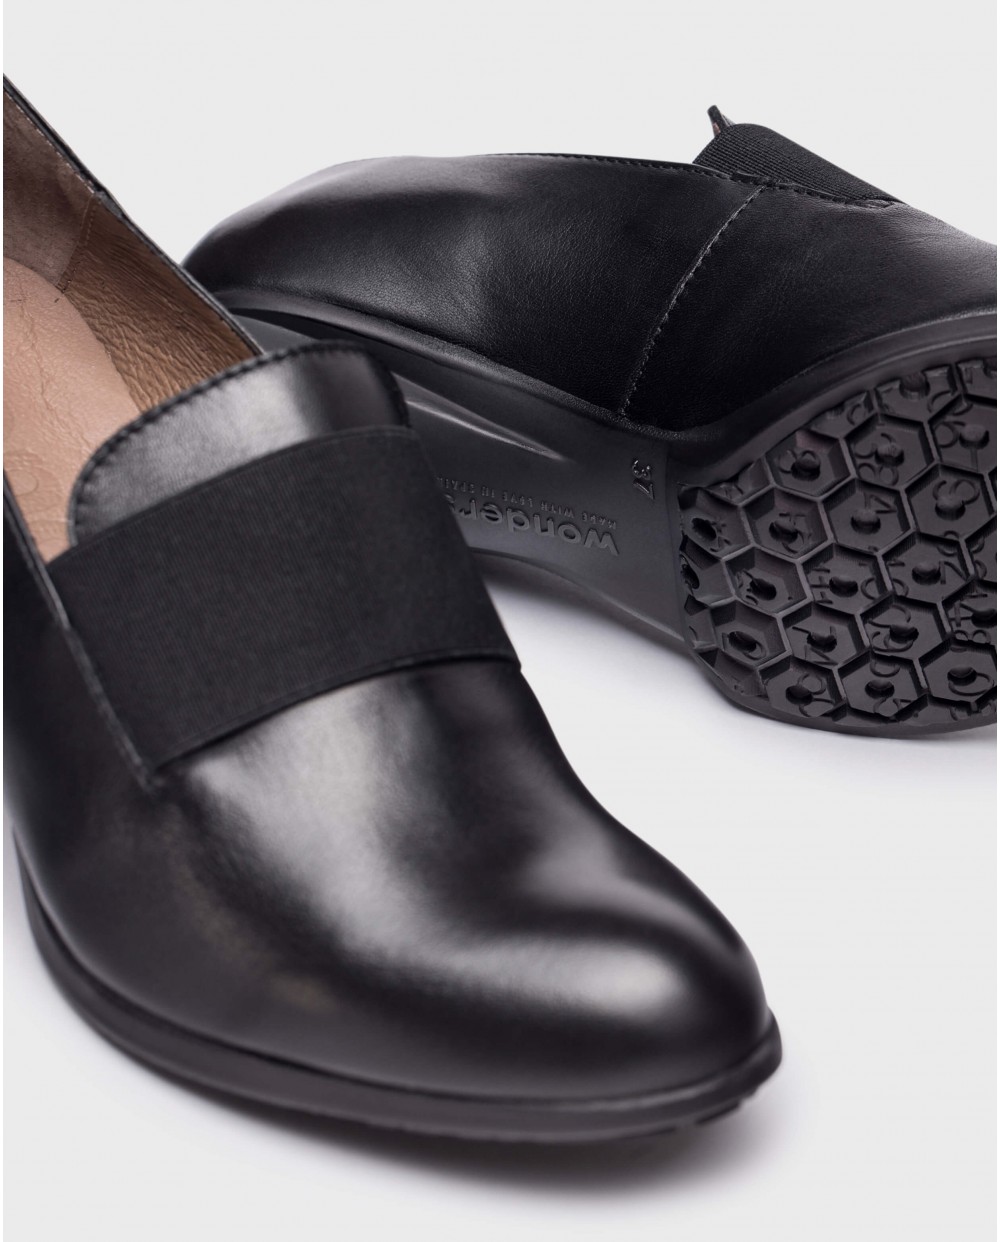 Wonders-Heels-Black elastic shoes